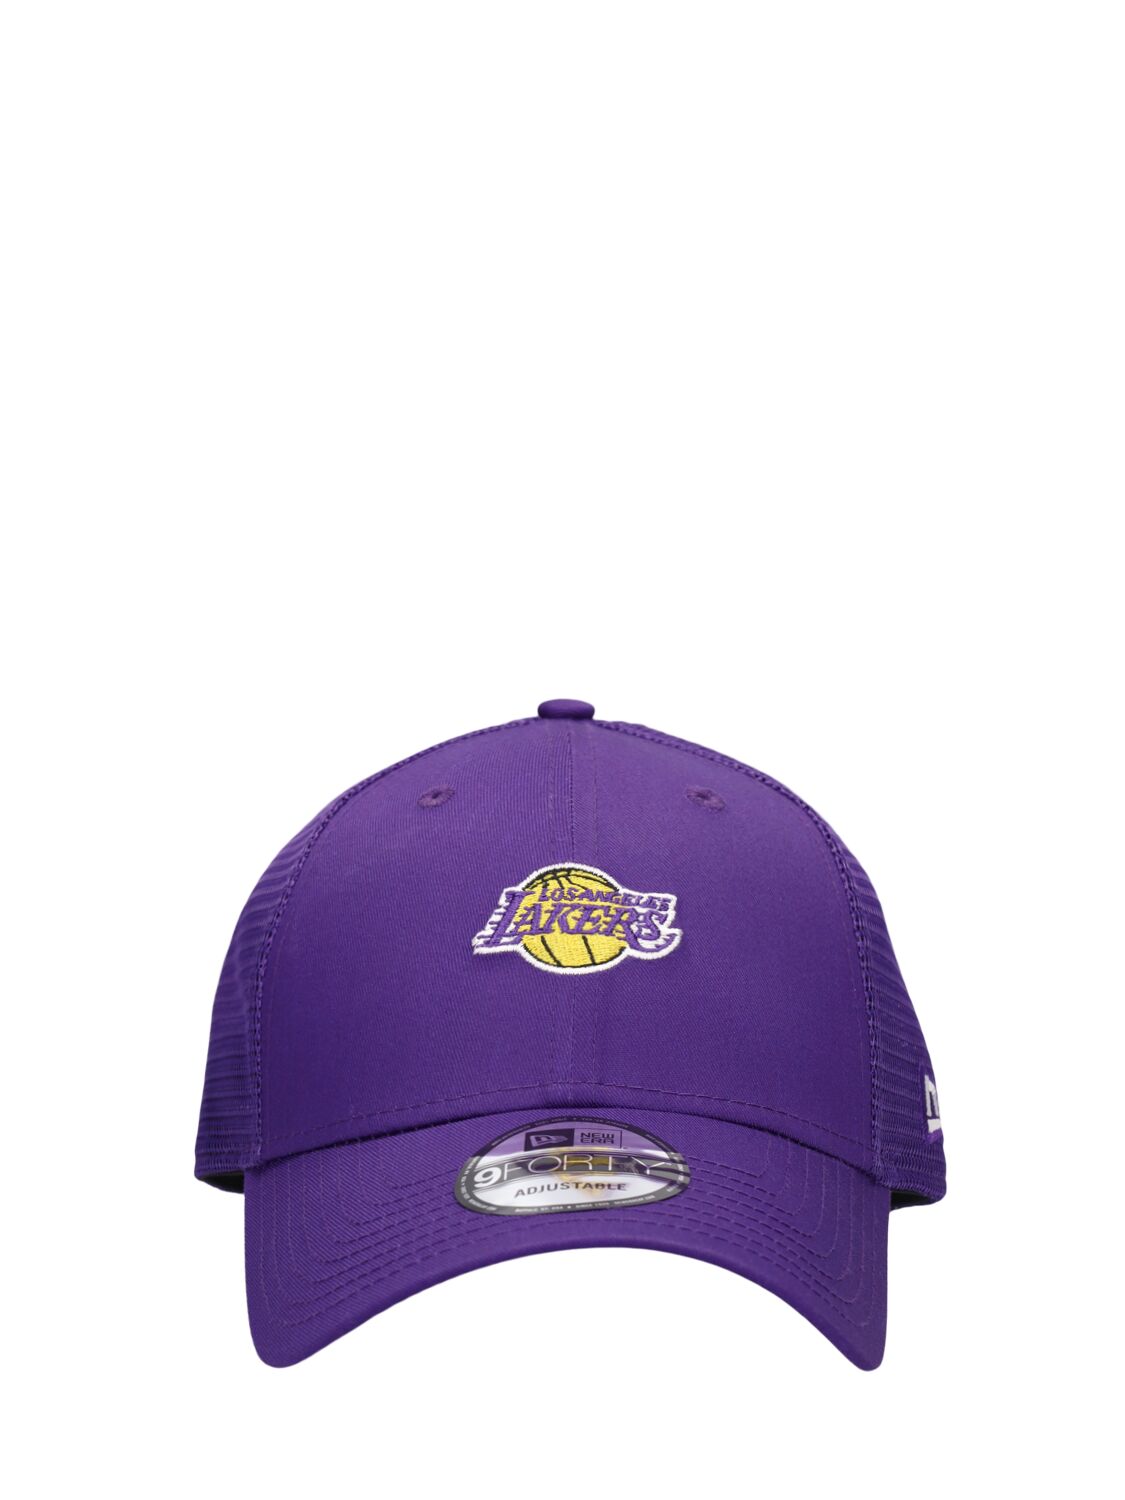 New Era La Lakers 9forty Trucker Cap In Purple